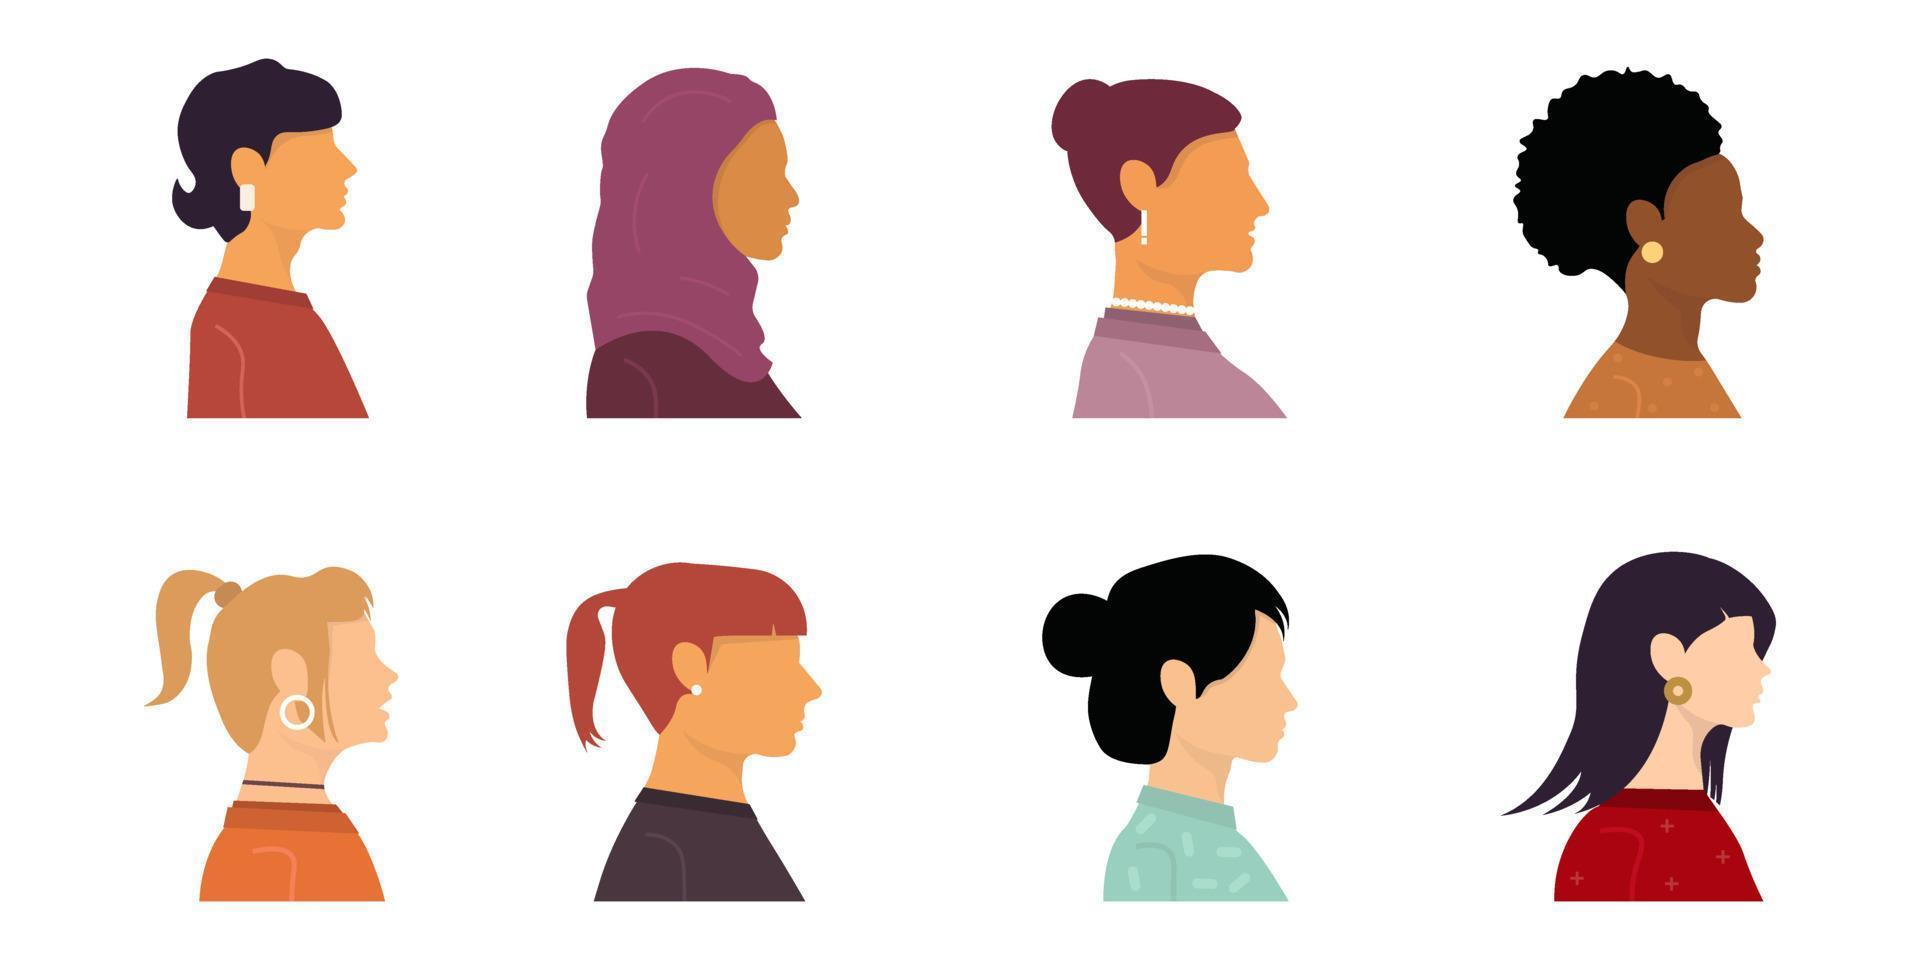 coleção de avatares planos coloridos com cabeças de mulheres diferentes. várias nacionalidades. vista lateral. loira, morena, ruiva, europeia, afro-americana, asiática, muçulmana. ilustração vetorial. vetor